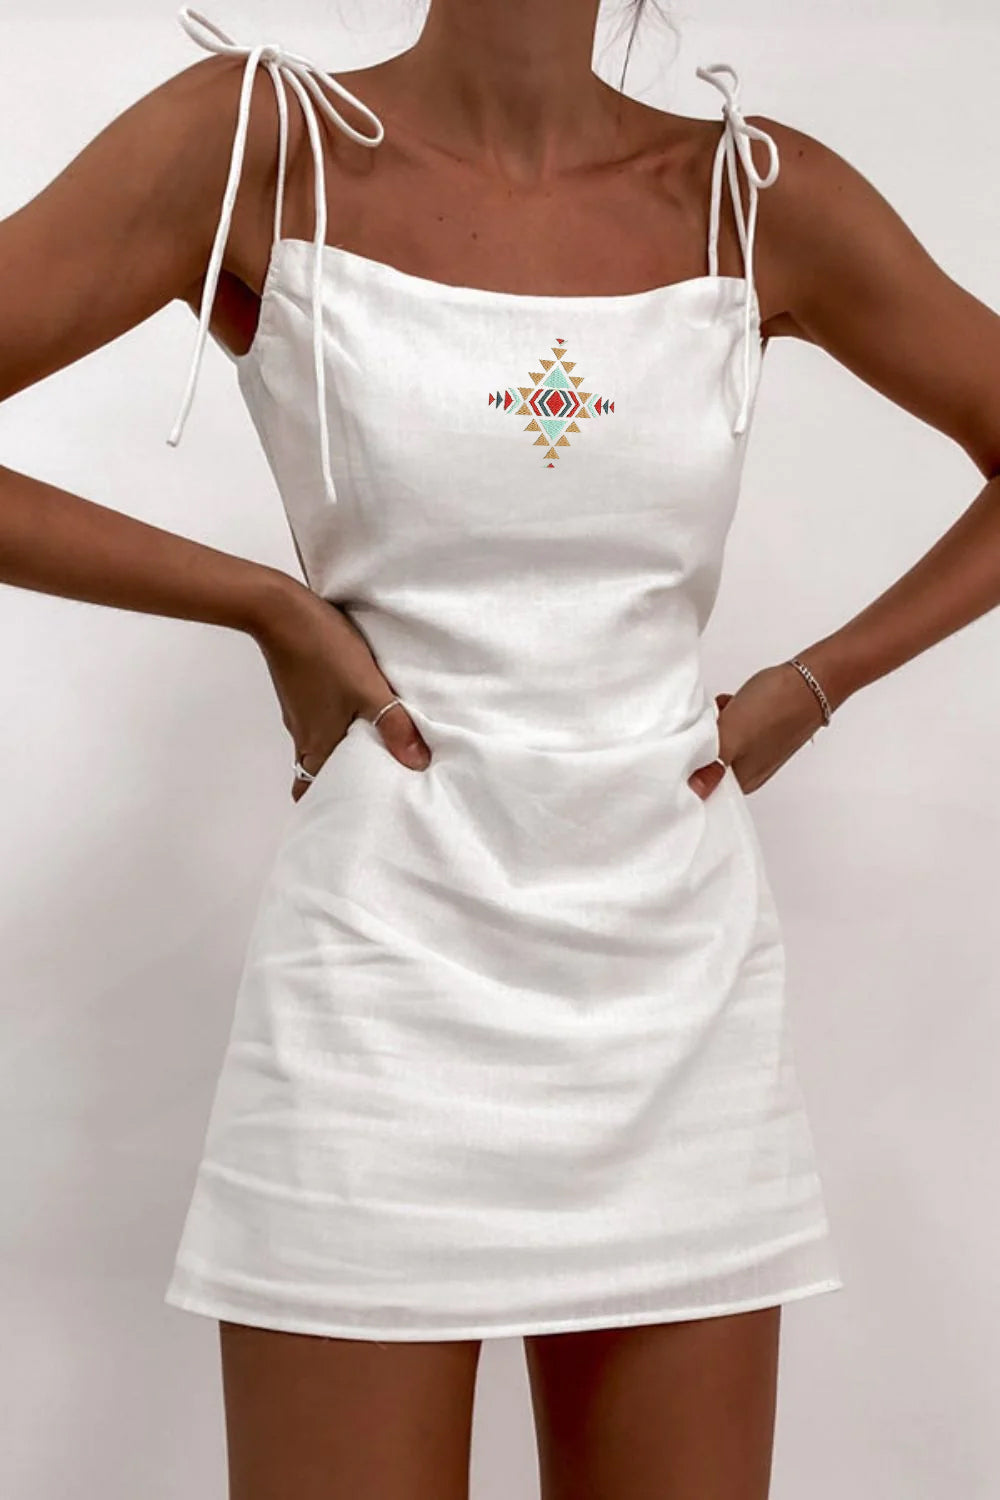 A Chic White Summer Dress from Brochu Walker